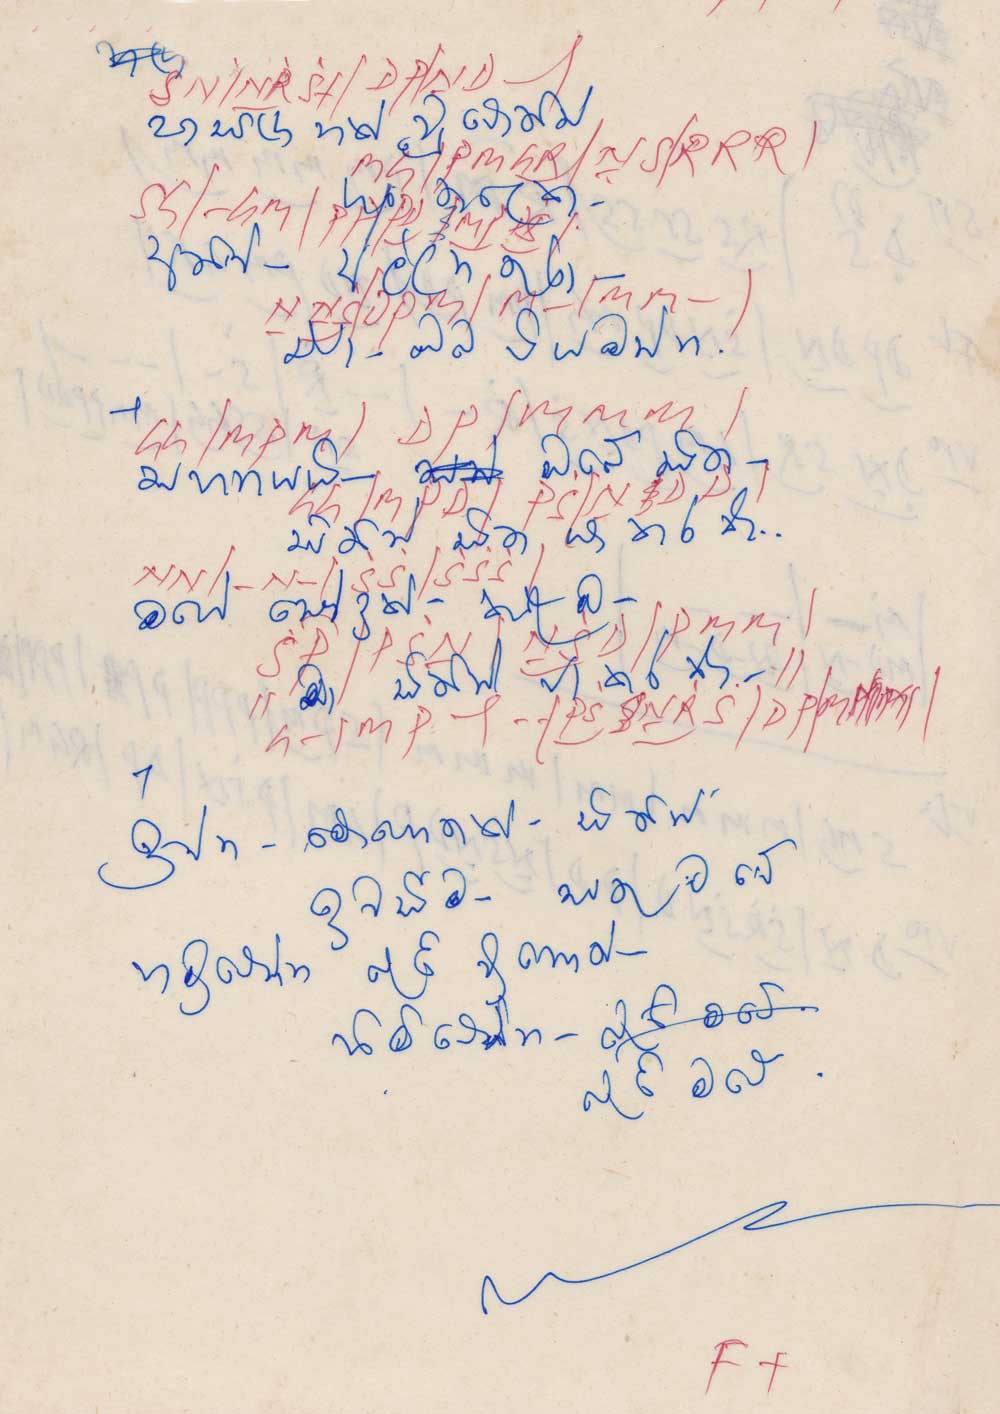 Handwritings of Premakeerthi
ප්‍රේම්ගේ අත්අකුරින් වික්ටර්ට ලියා දුන් ගීයක්